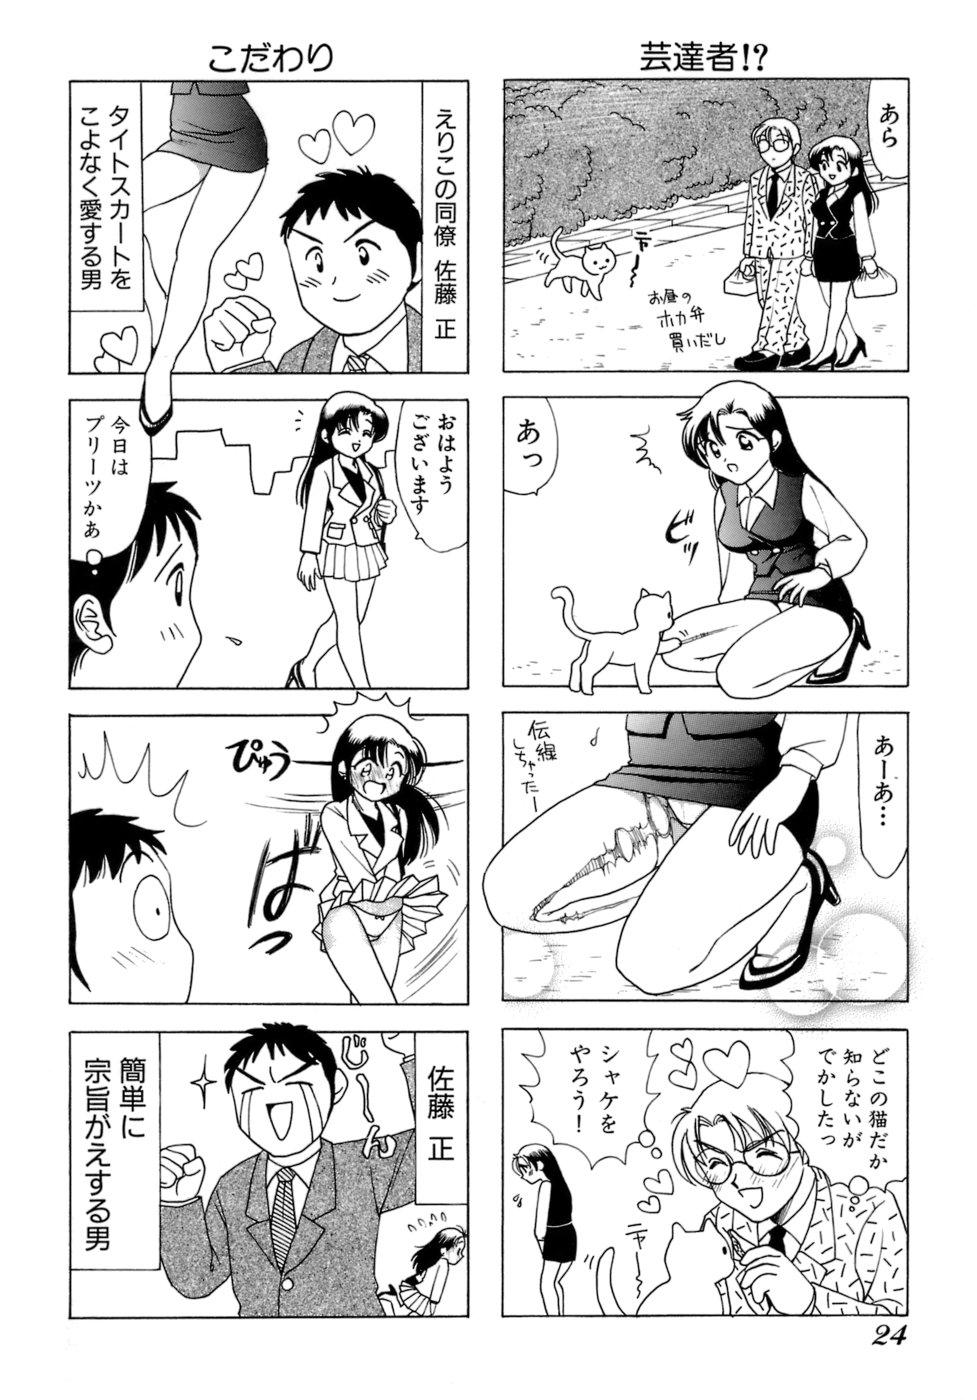 Eriko-kun, Ocha!! Vol.01 26